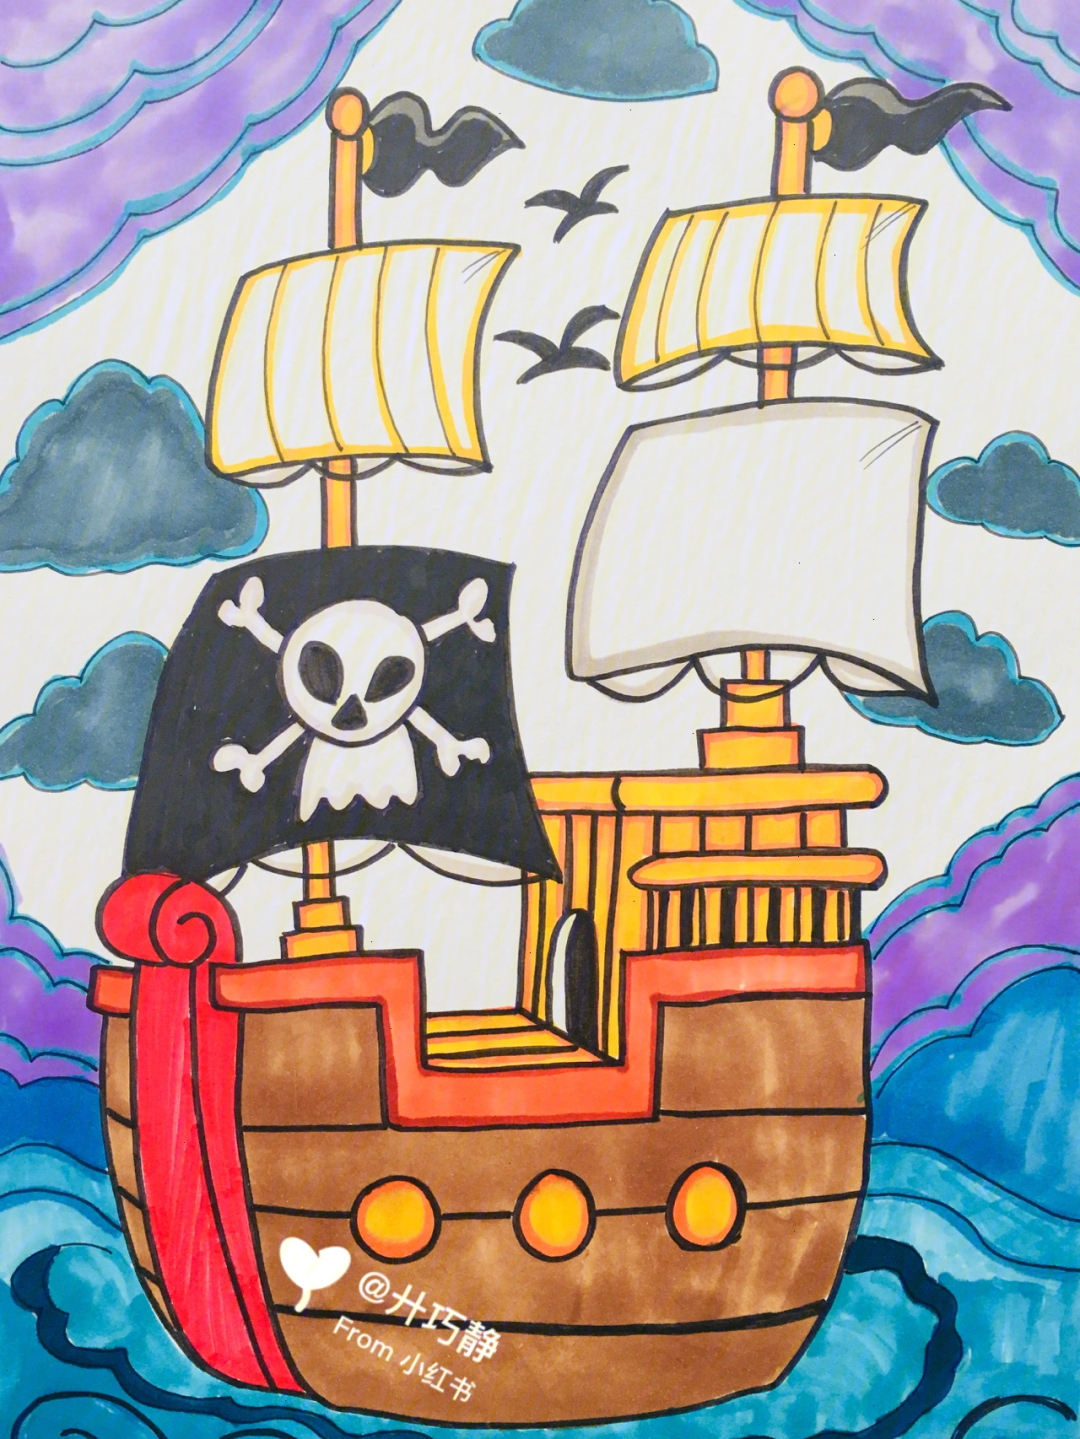 画海盗船 线描图片